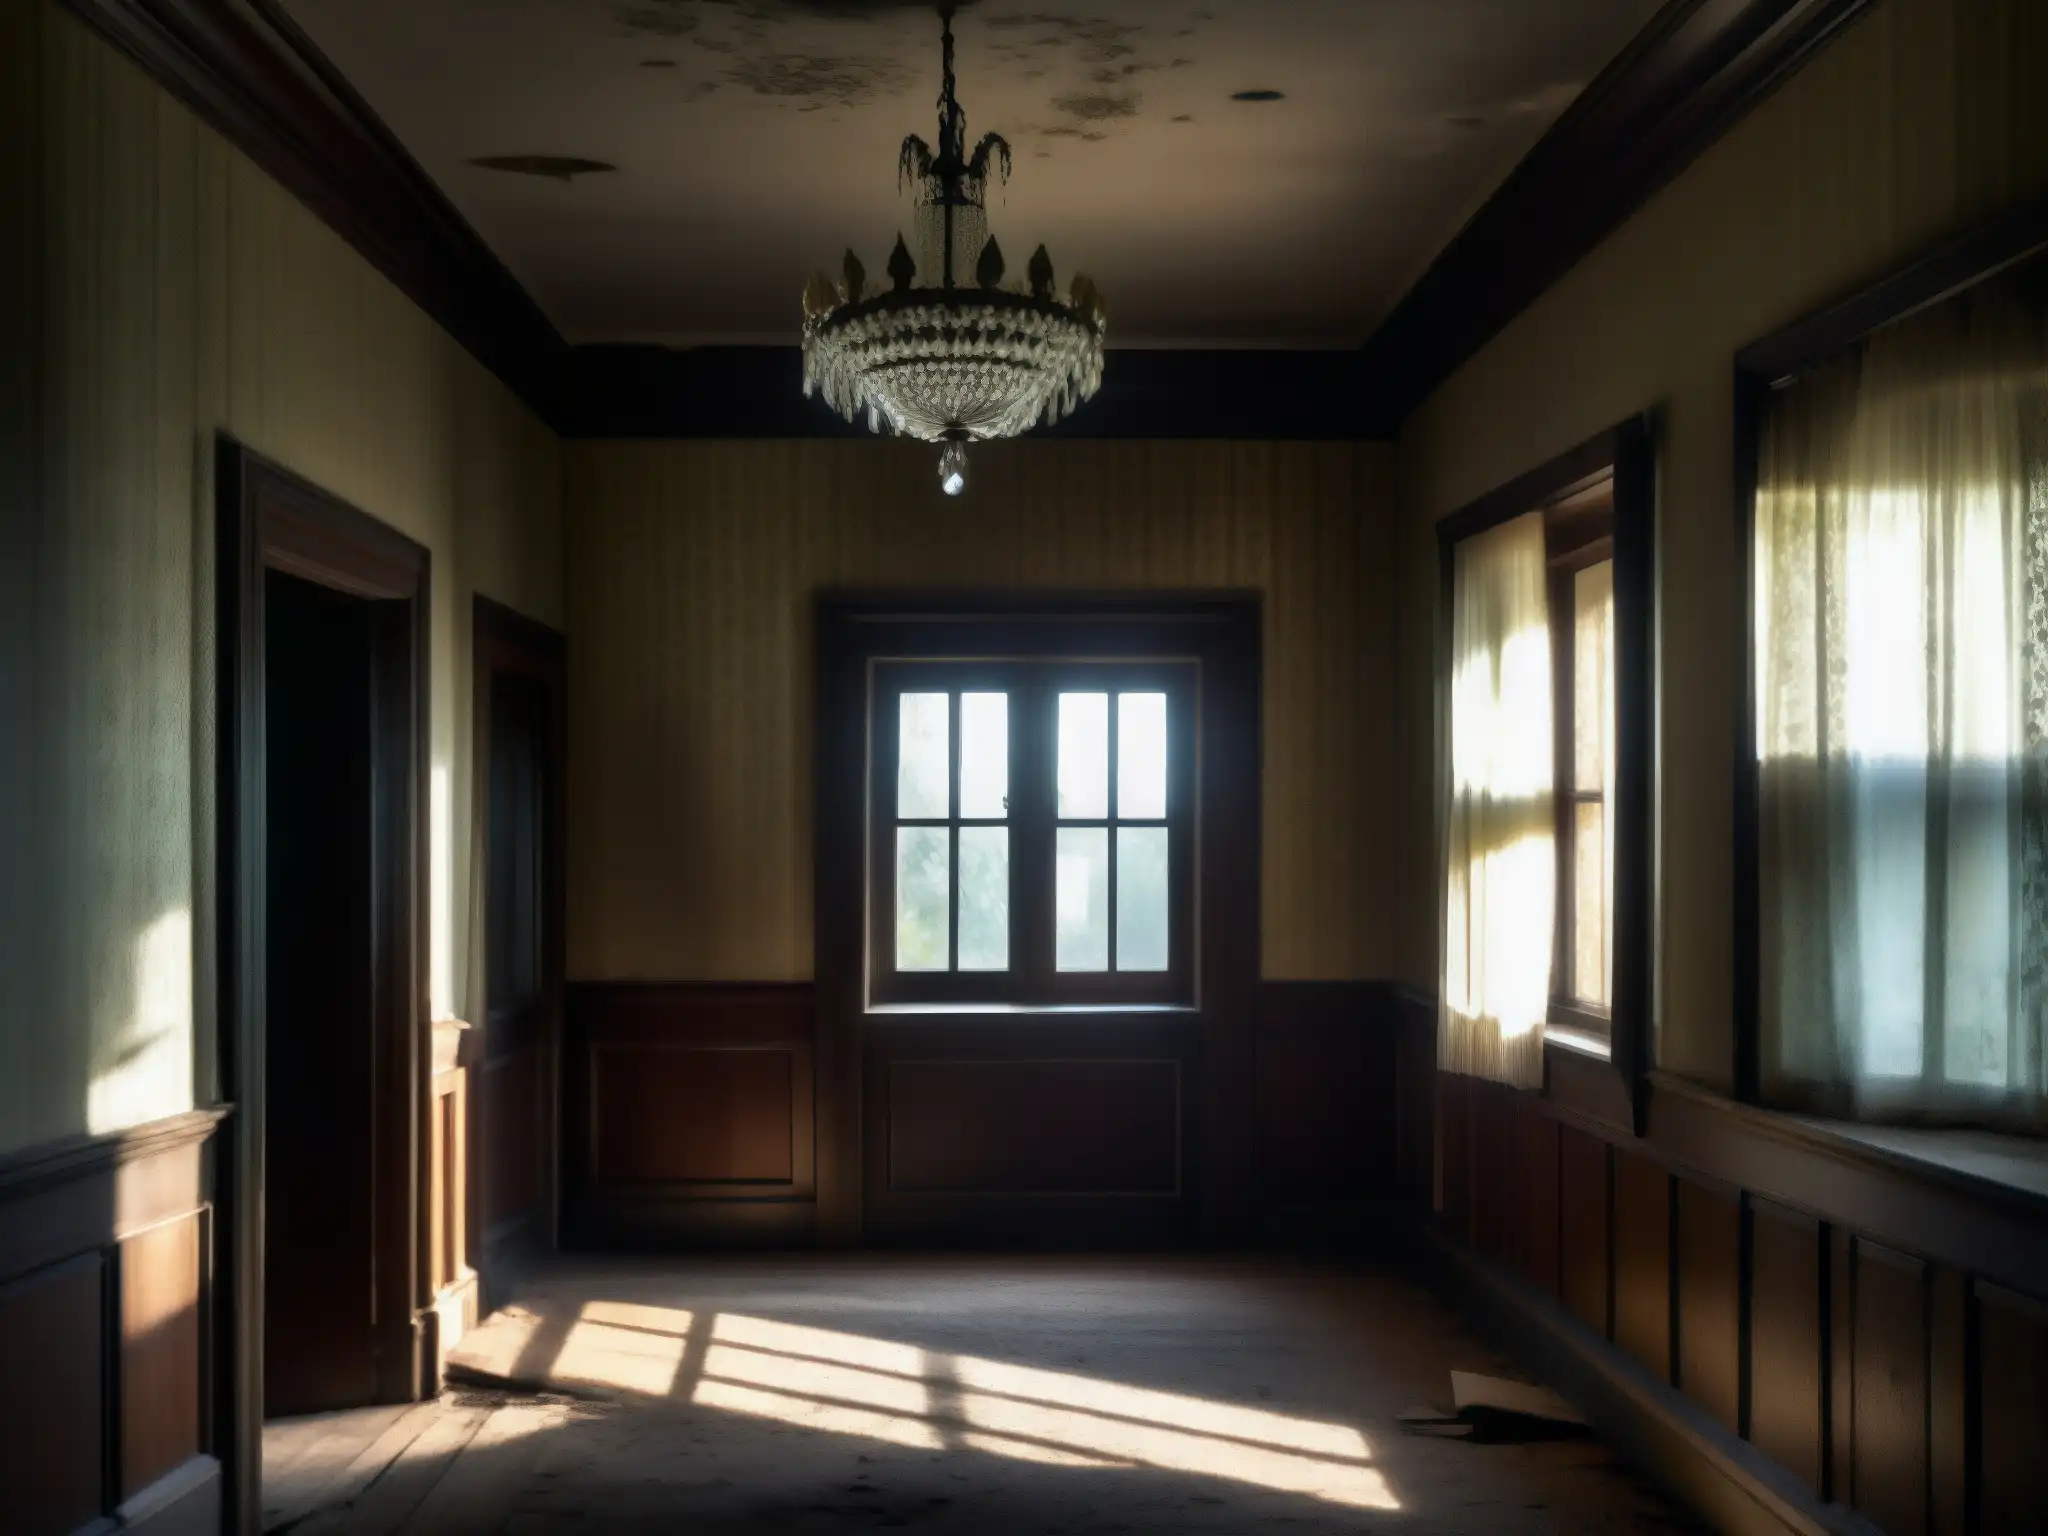 Un pasillo oscuro en una mansión abandonada con muebles decrépitos y sombras misteriosas